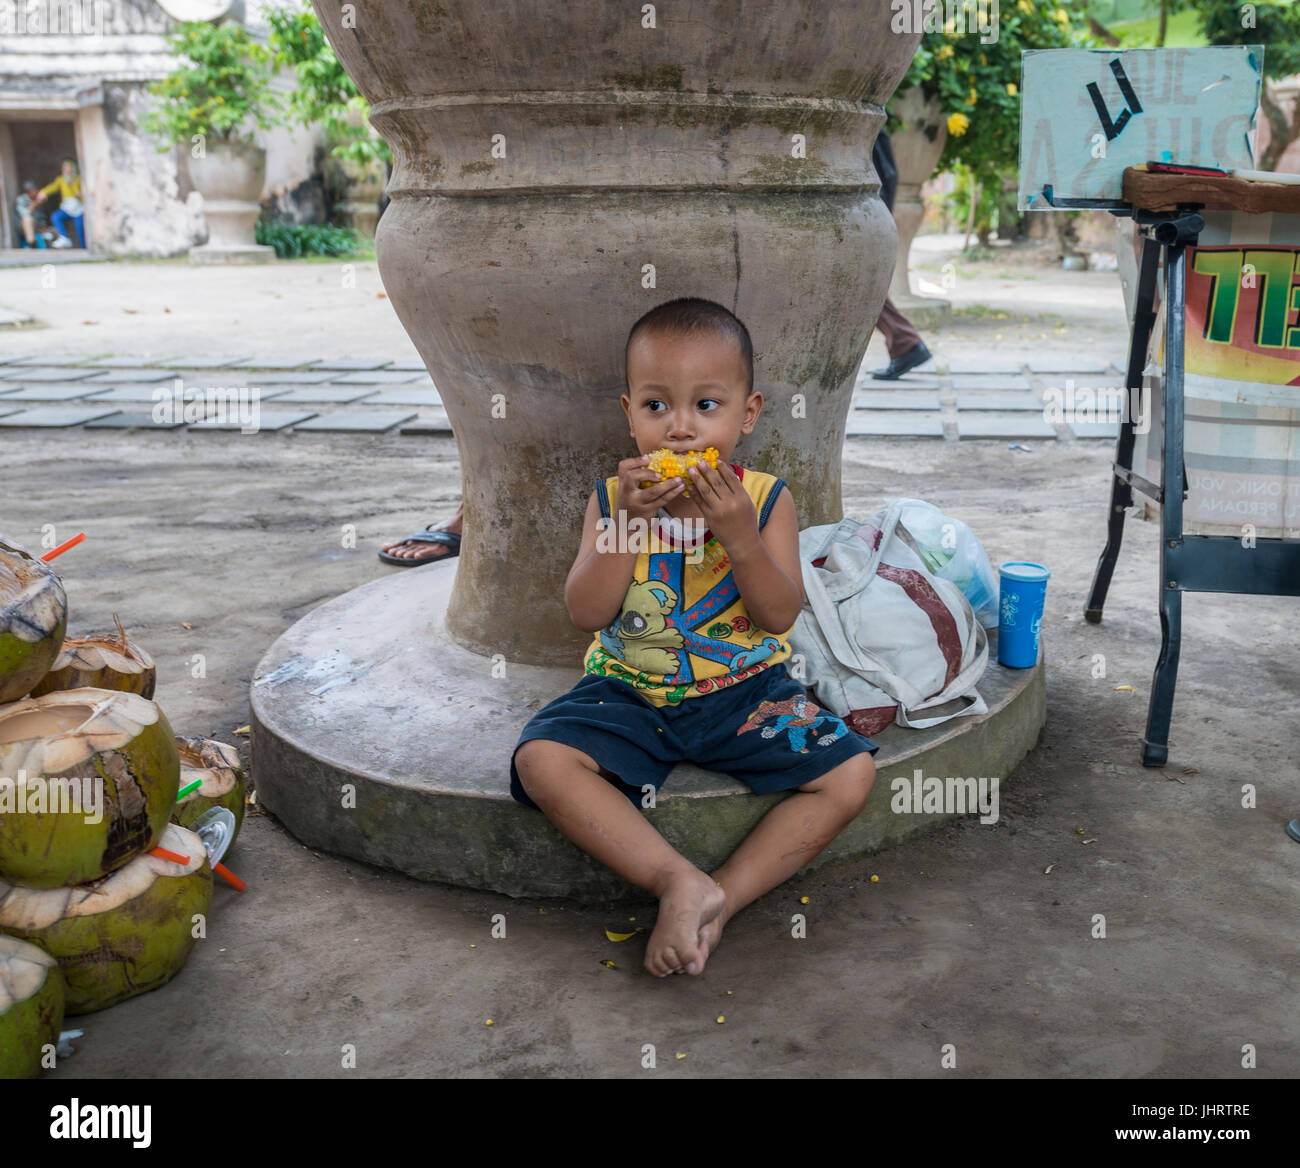 Peu d'indonésien boy eating corn grillé sur le côté de la route, Yogyakarta, Java, Indonésie Banque D'Images